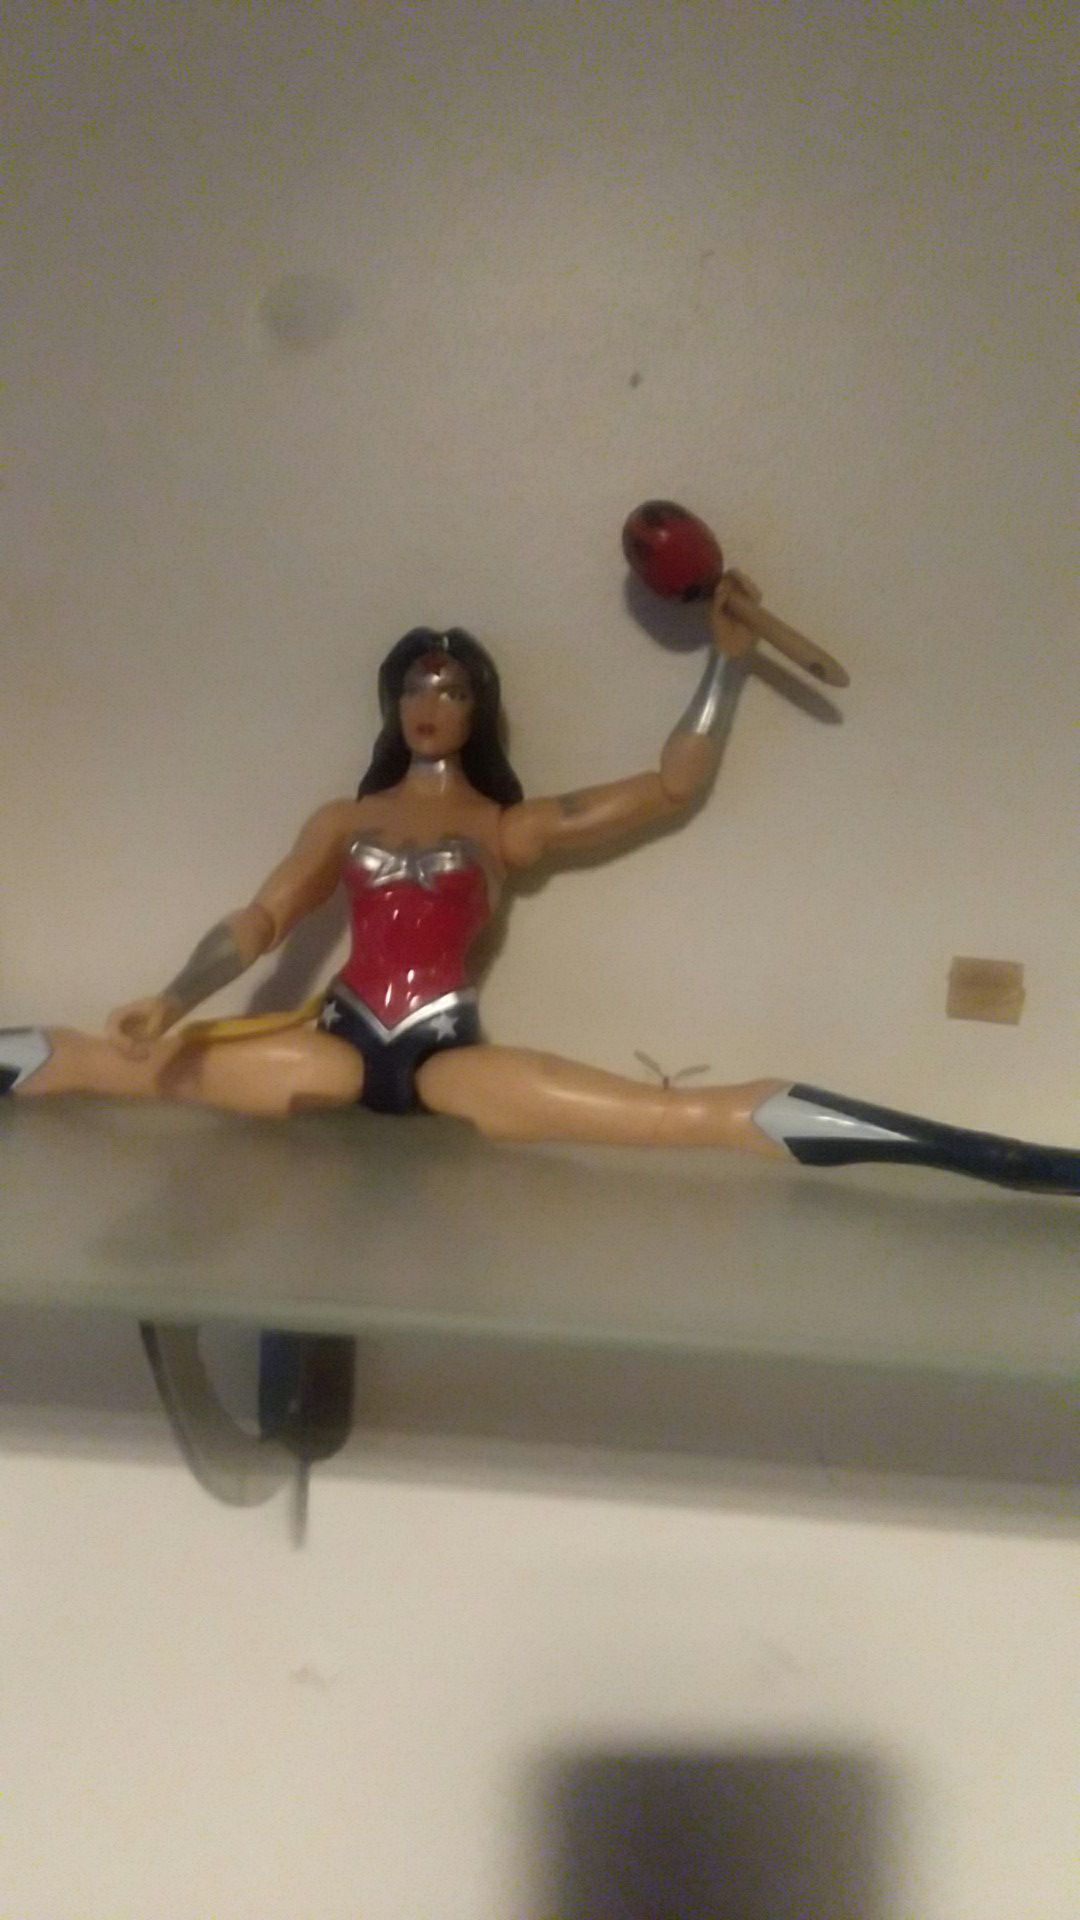 Wonder Woman action figure